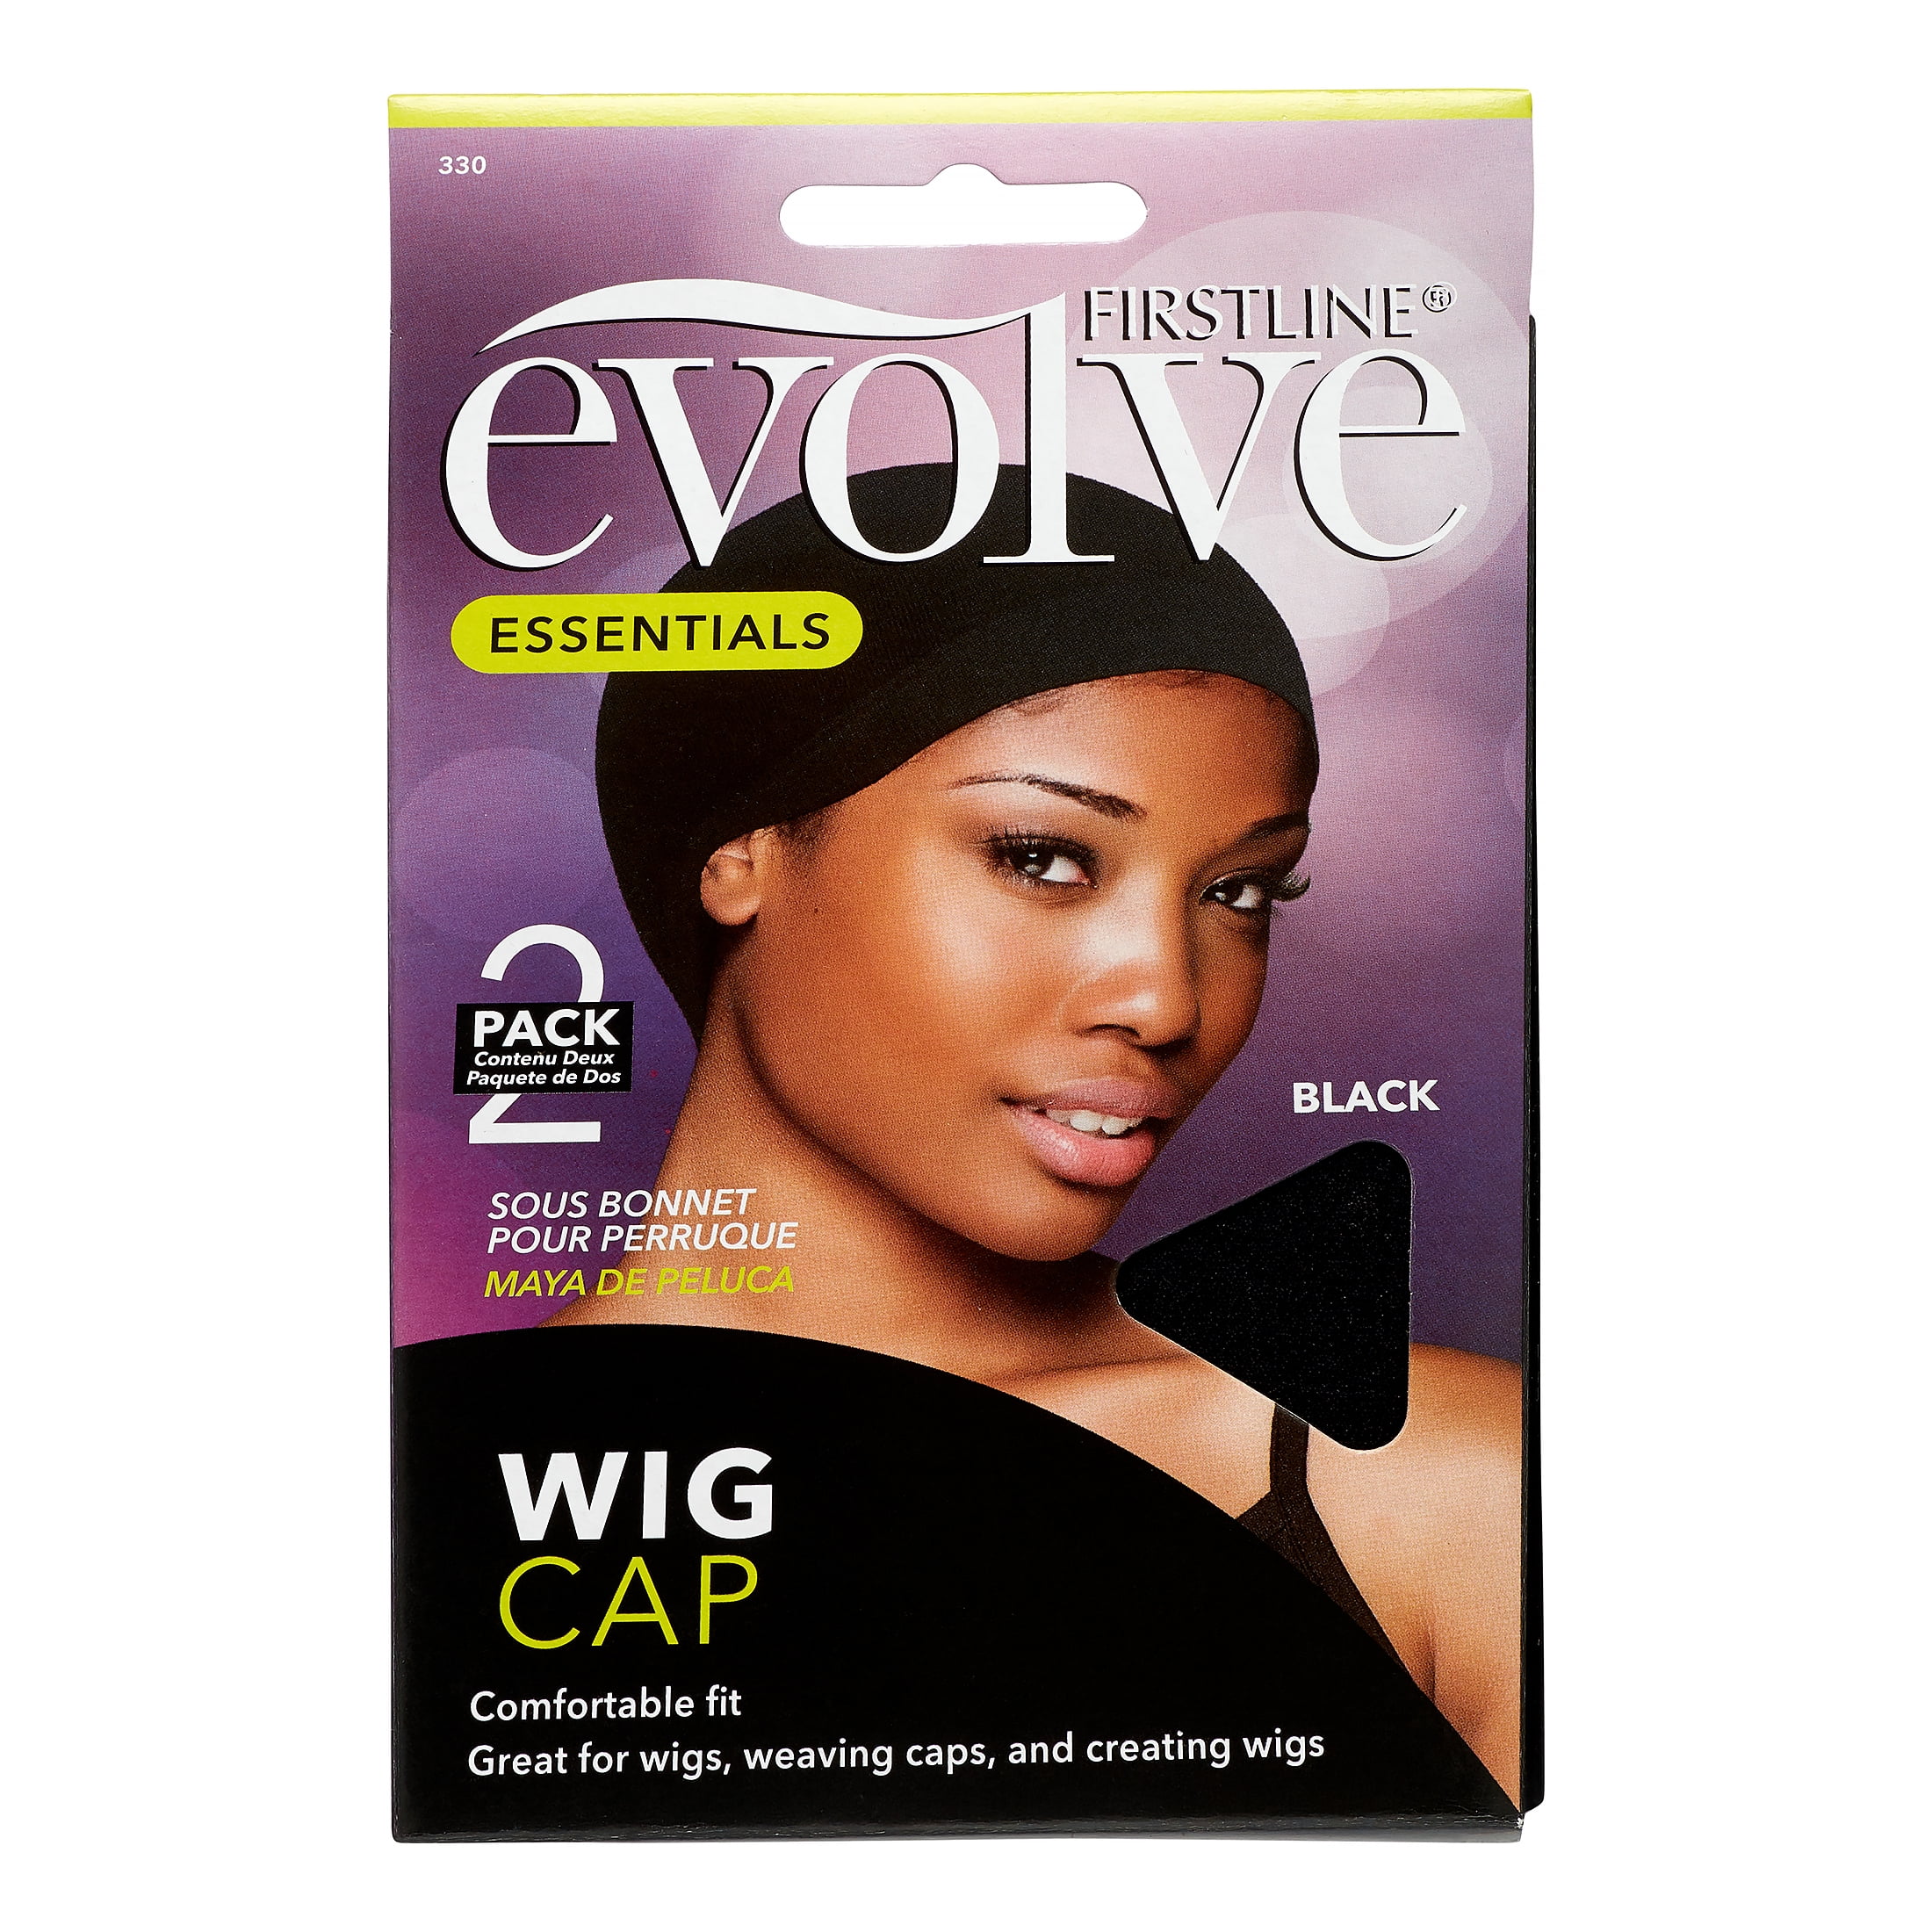 Evolve Wig Cap Black - Walmart.com 